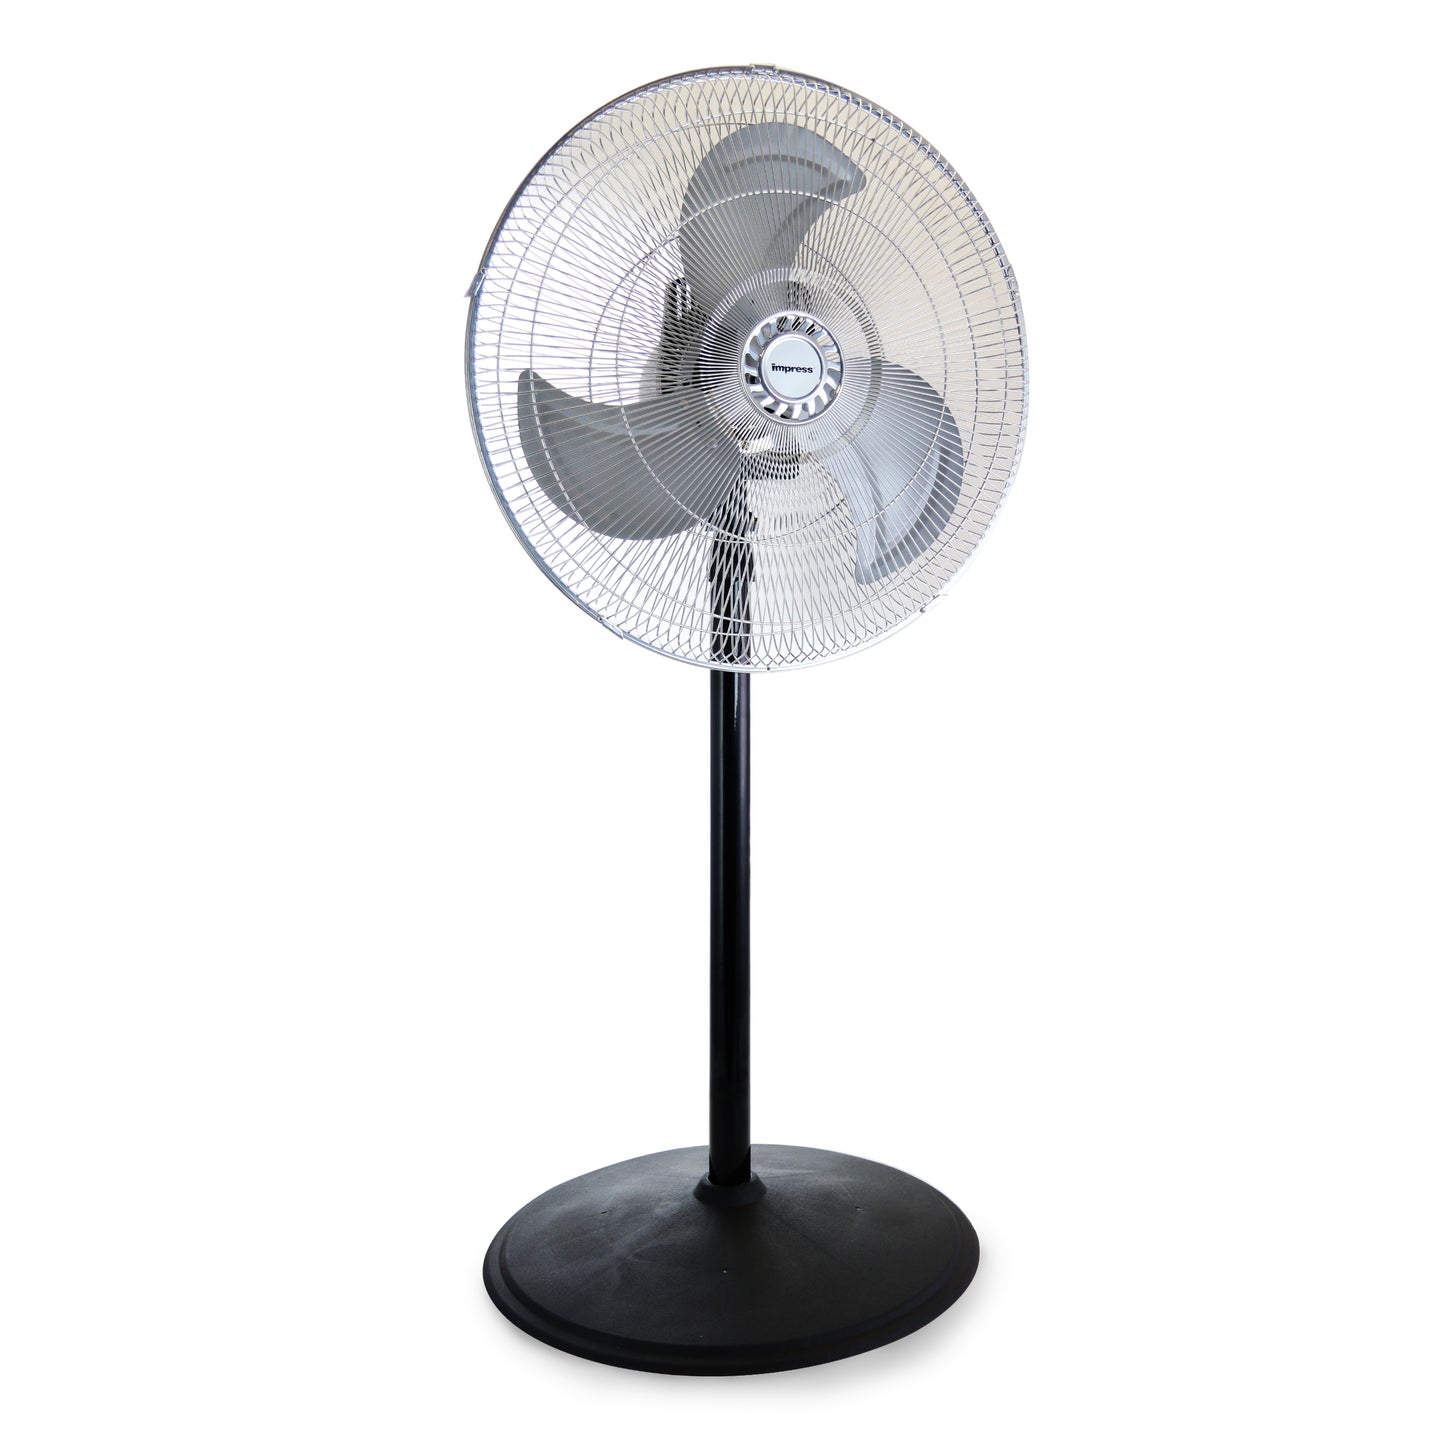 IMPRESS Impress 3 in 1 18 Inch High Speed Fan